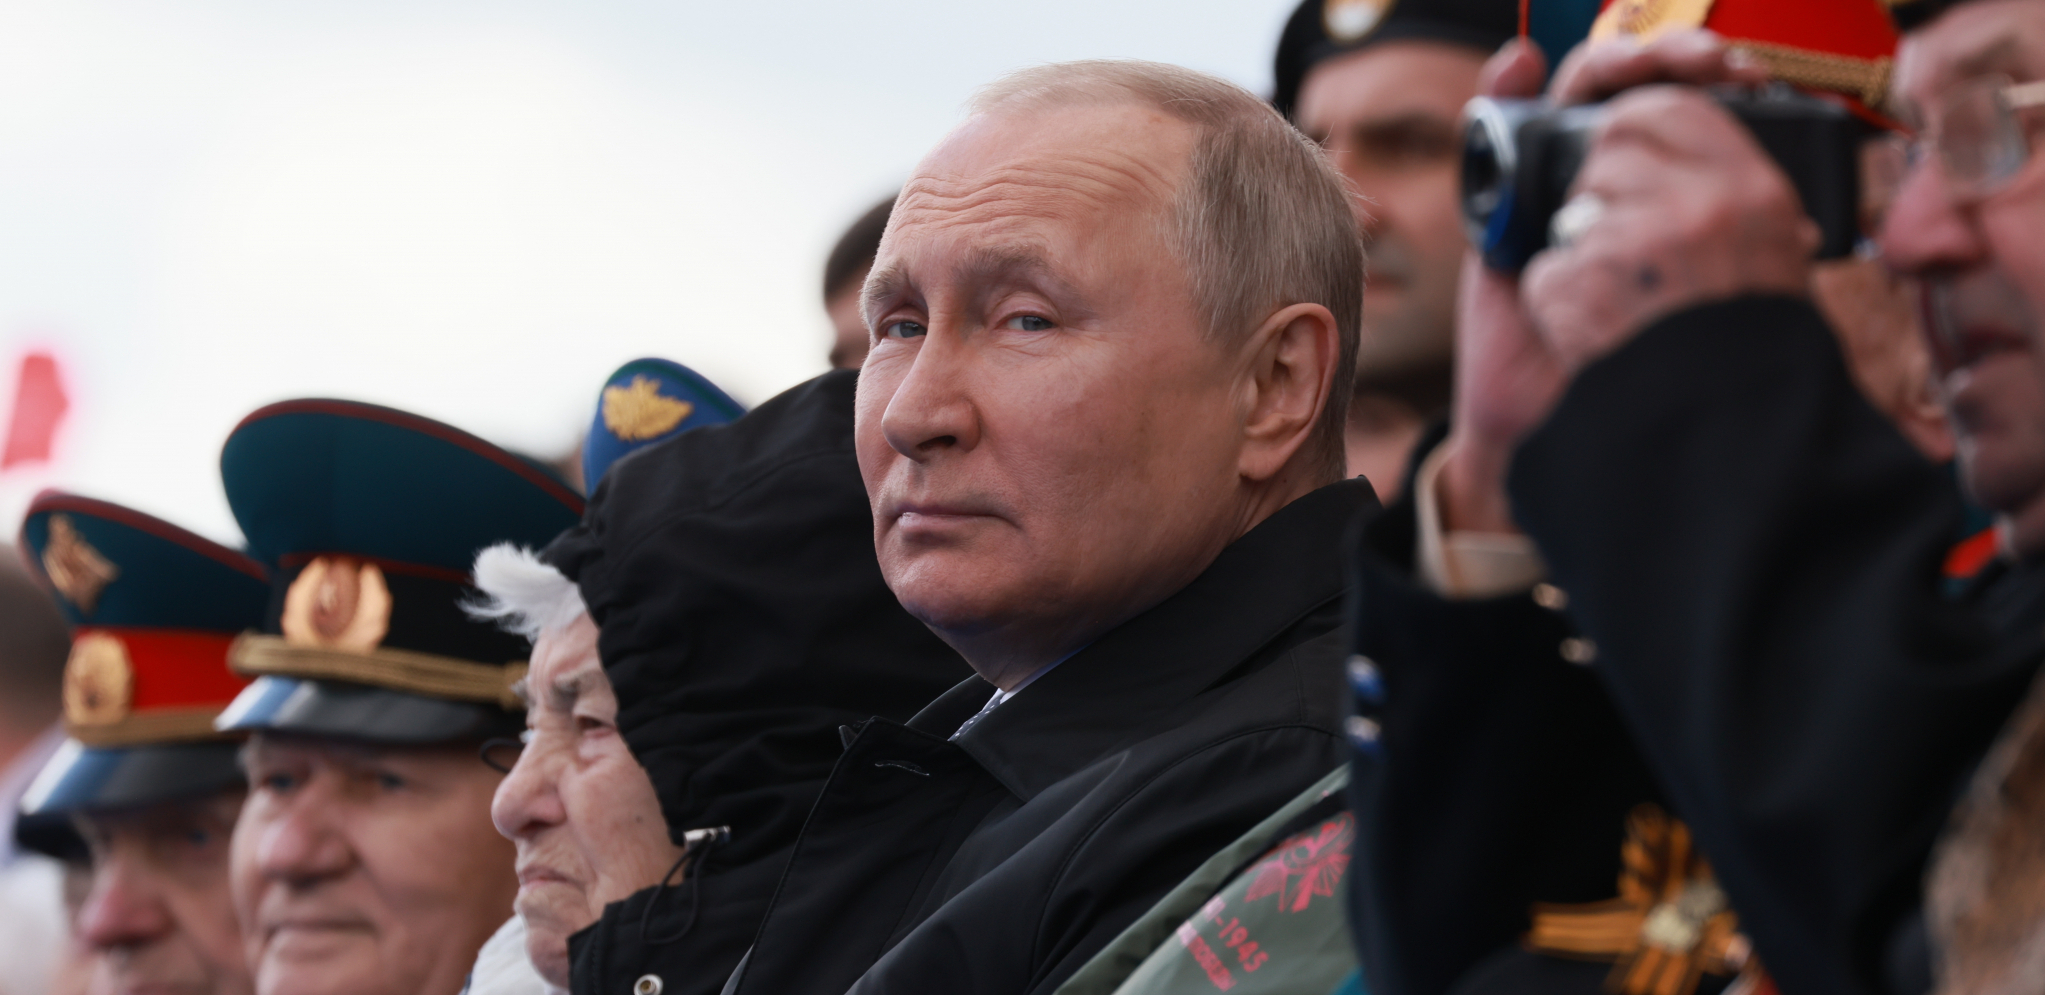 PUCAJU KAO ORASI Putin o uzrocima globalne krize i snabdevanju ukrajinskim žitom